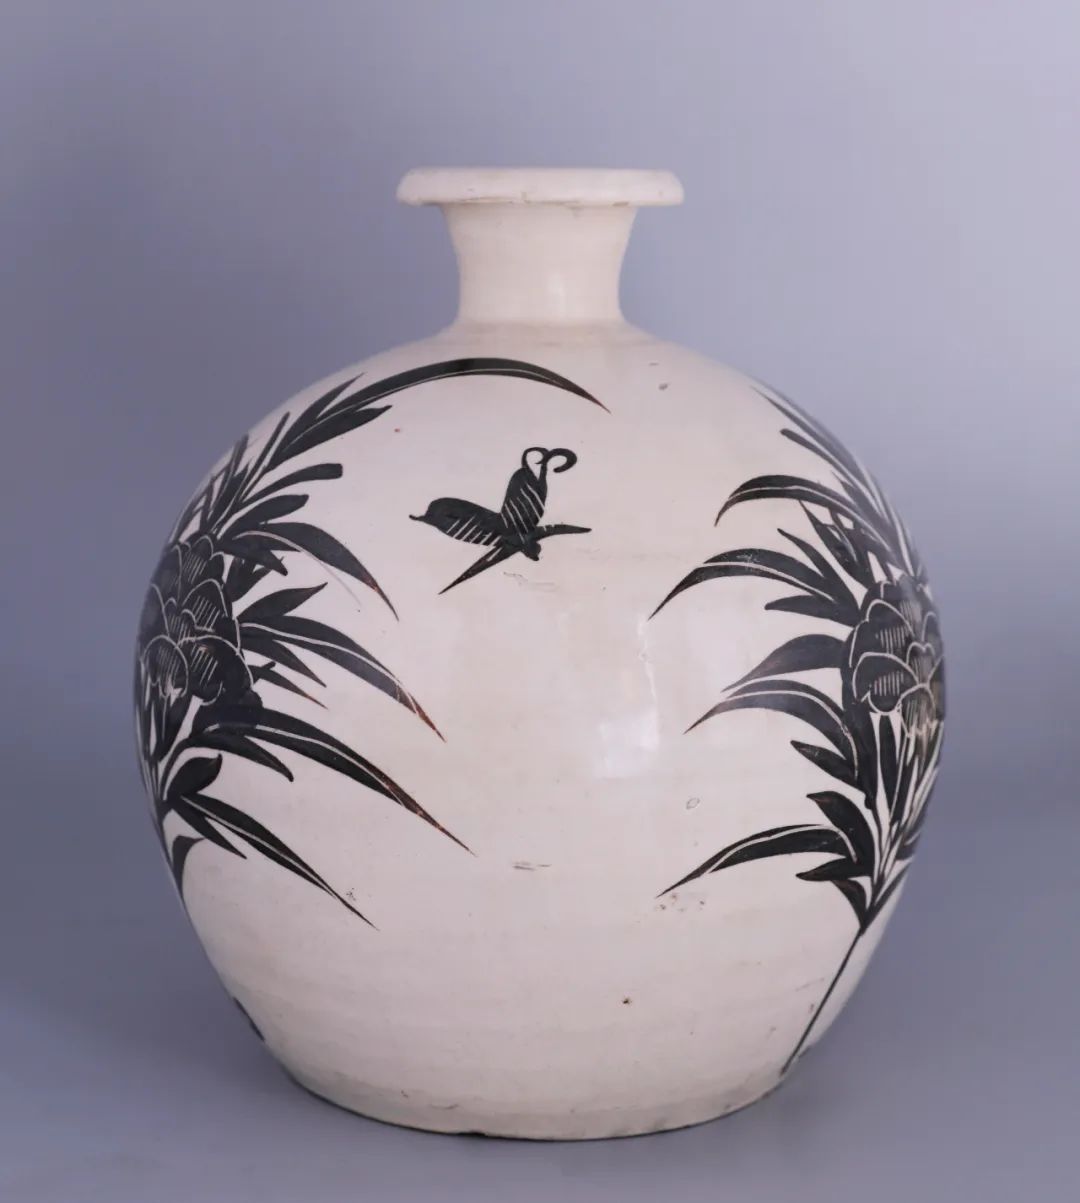 磁州窑创造性的将中国绘画技法以图案构成形式绘制在瓷器上,开创